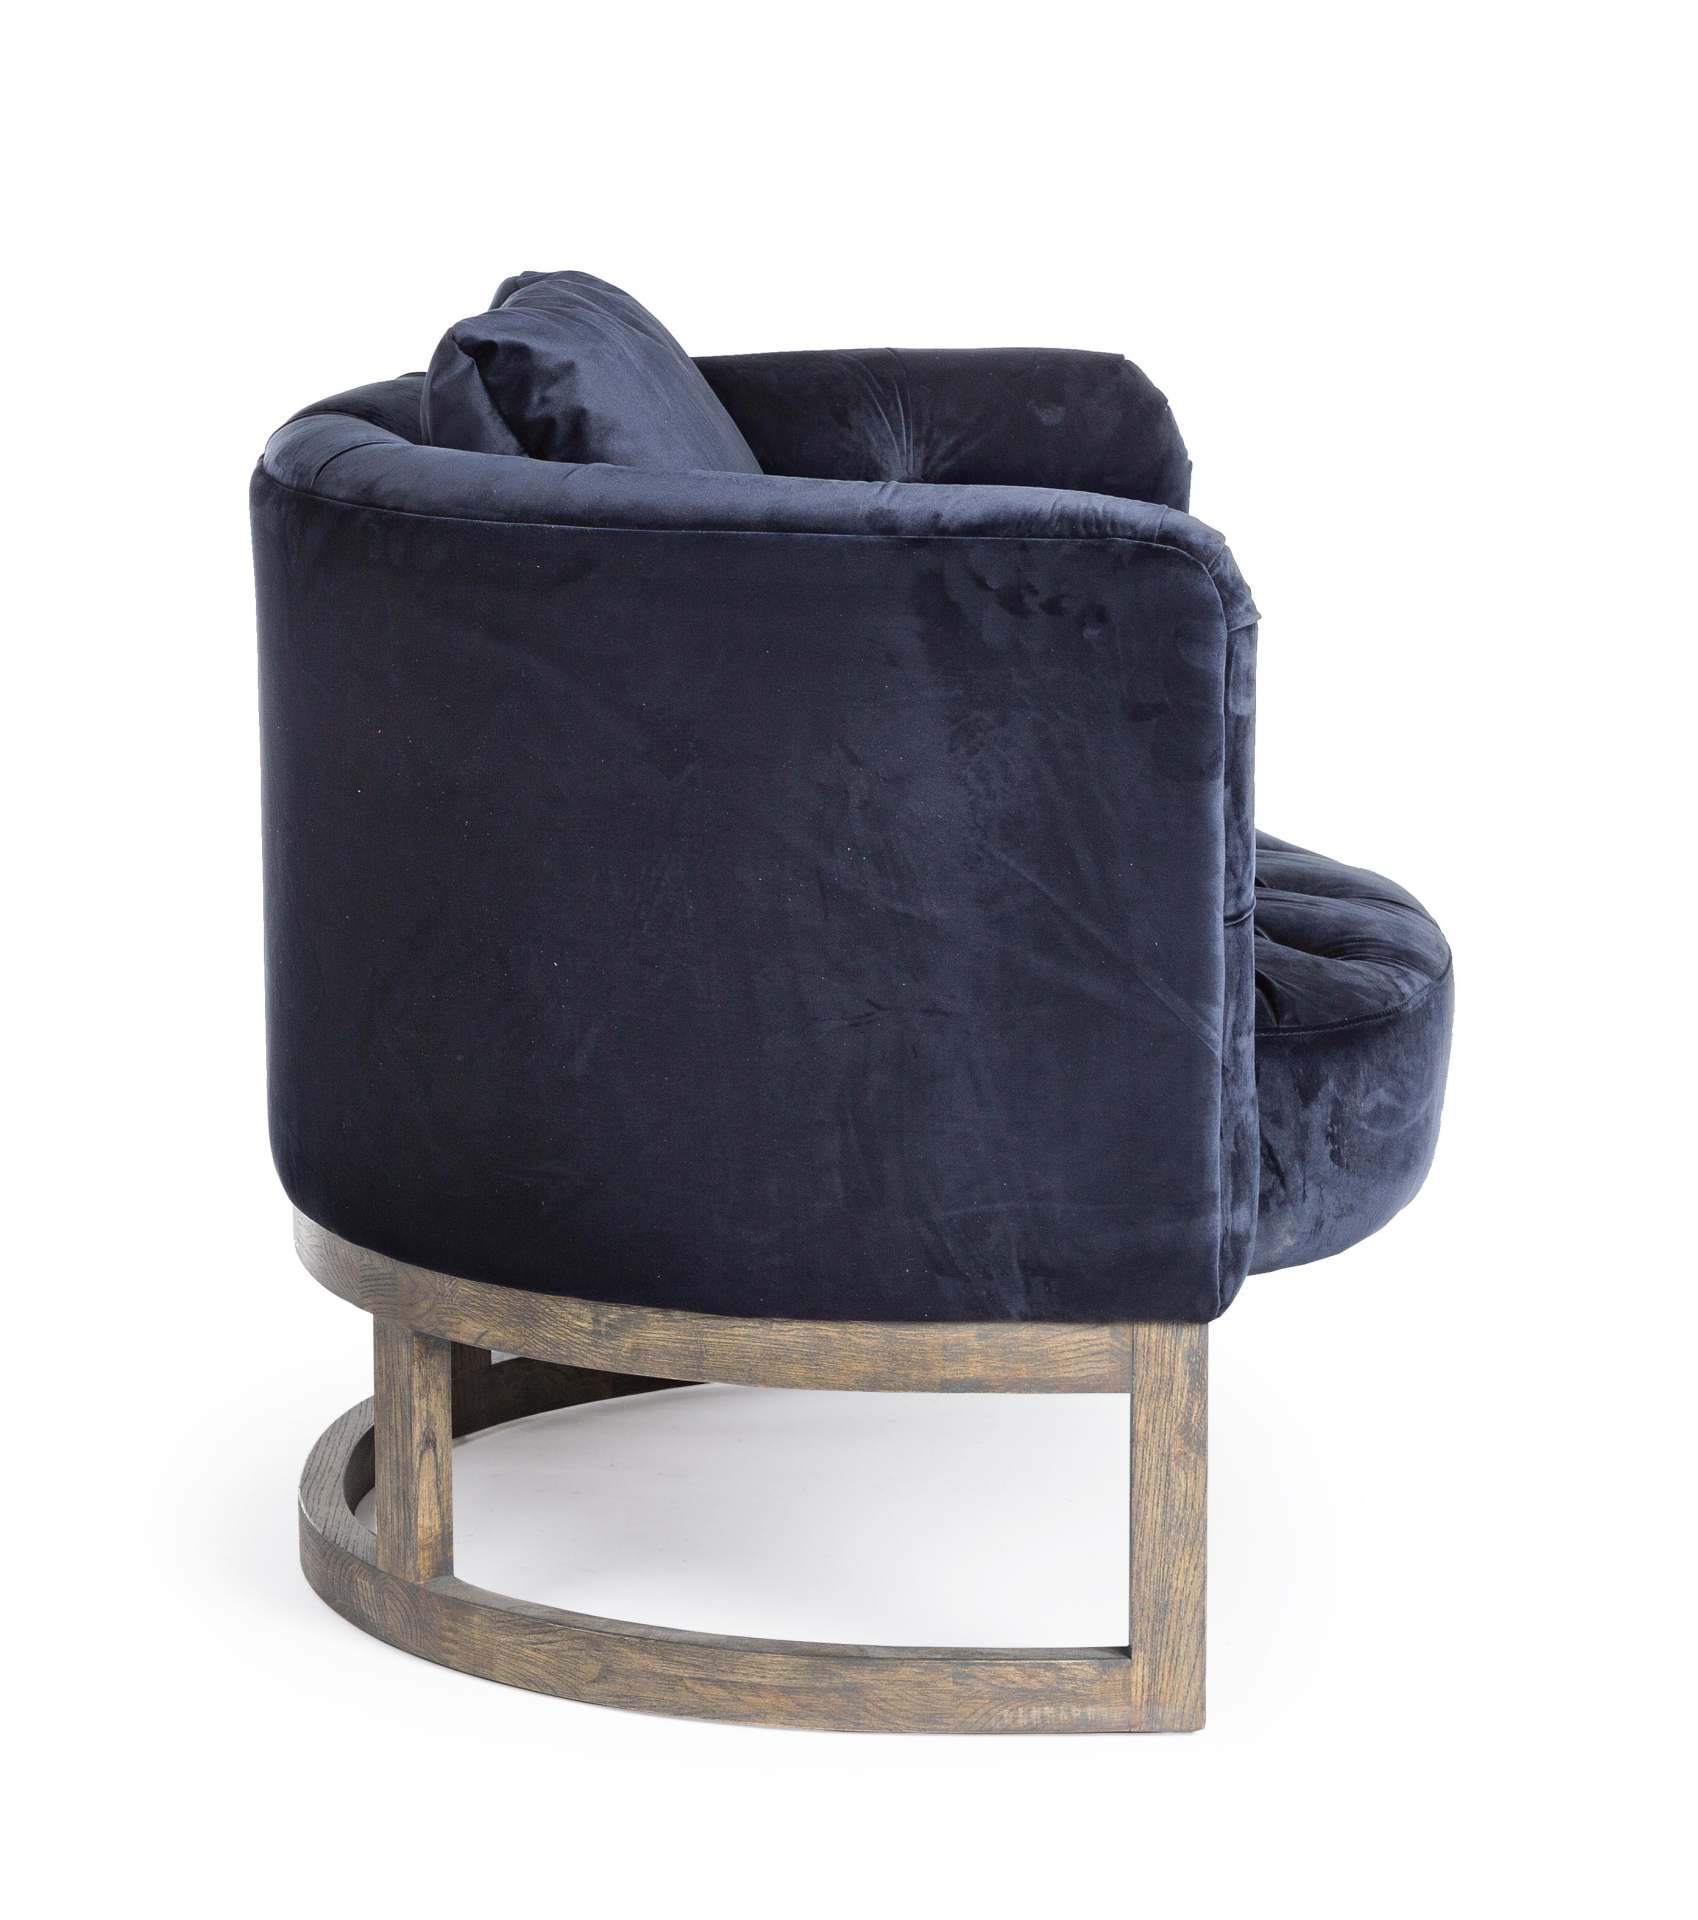 Der Sessel Midway überzeugt mit seinem klassischen Design. Gefertigt wurde er aus Samt, welches einen blauen Farbton besitzt. Das Gestell ist aus Eichenholz und hat eine natürliche Farbe. Der Sessel besitzt eine Sitzhöhe von 42 cm. Die Breite beträgt 90 c